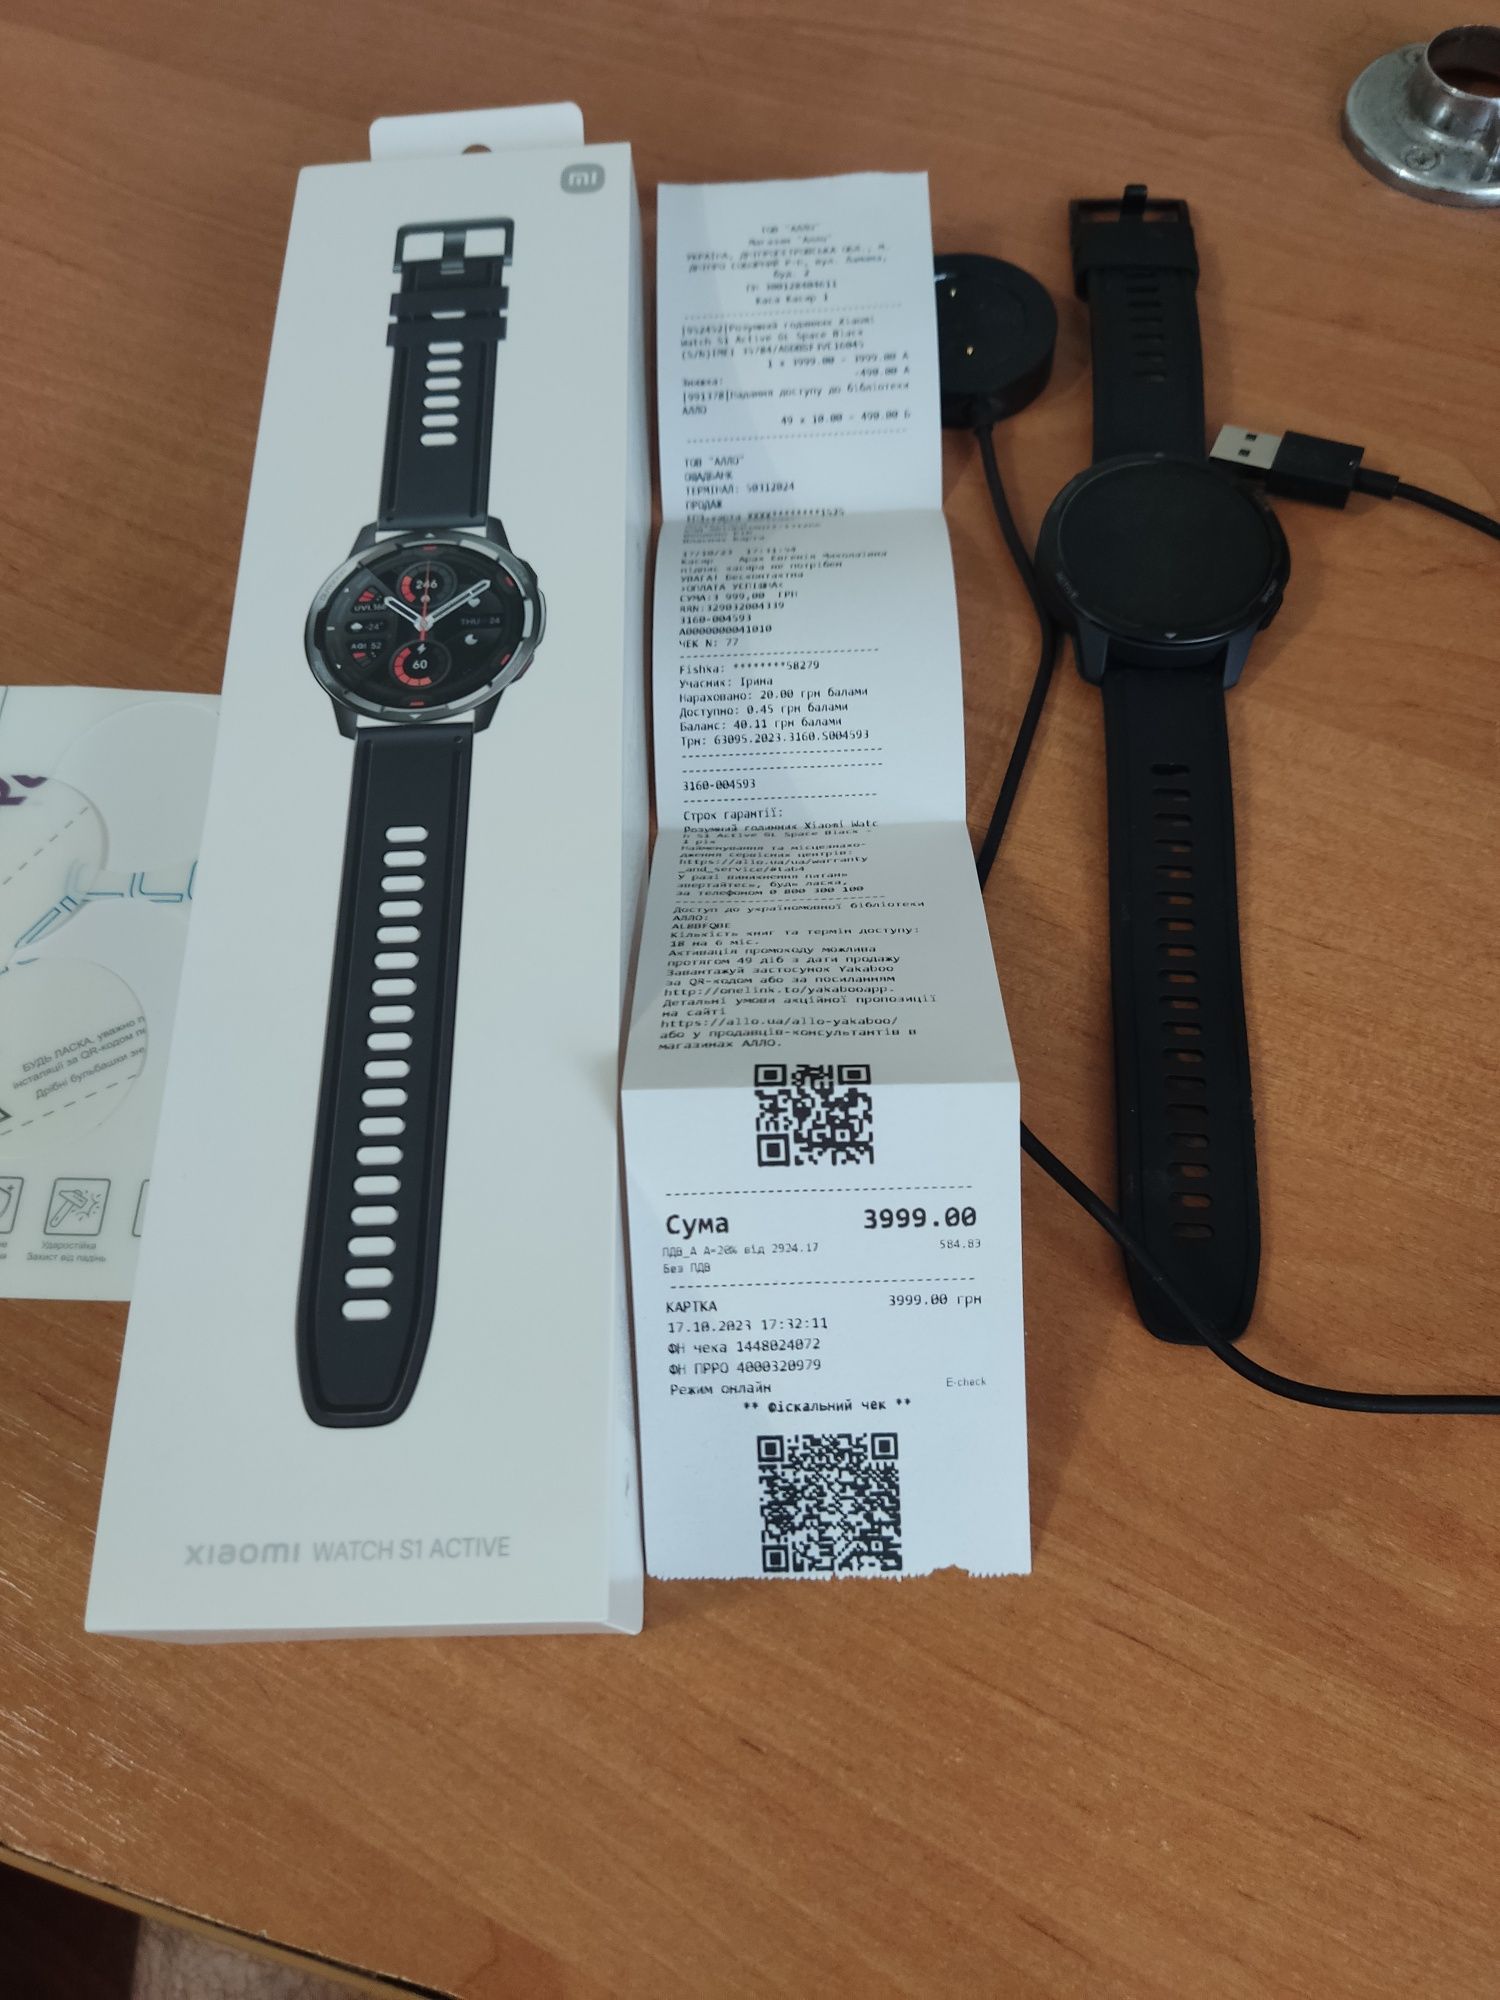 Xiaomi Watch S1 Active.